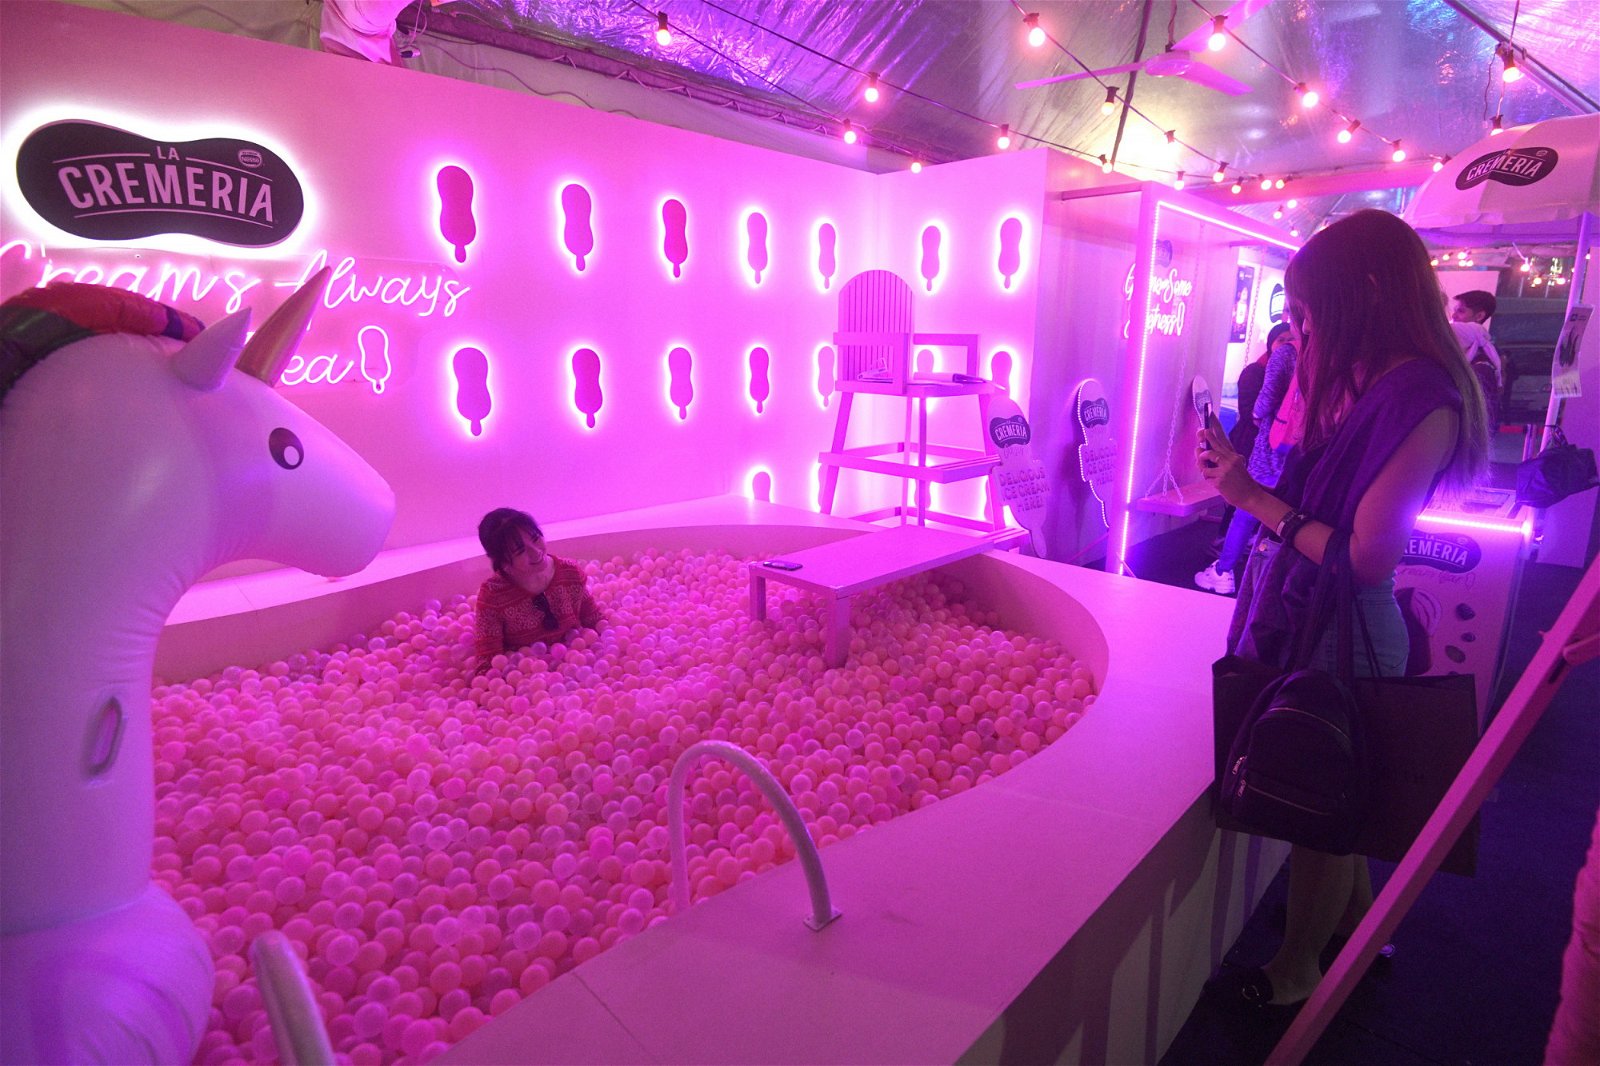 著名雪糕公司LA CREMERIA打造“粉红泡泡球浴池”及网宠”独角兽“，精致可爱的打卡地点，赢得众人欢心。